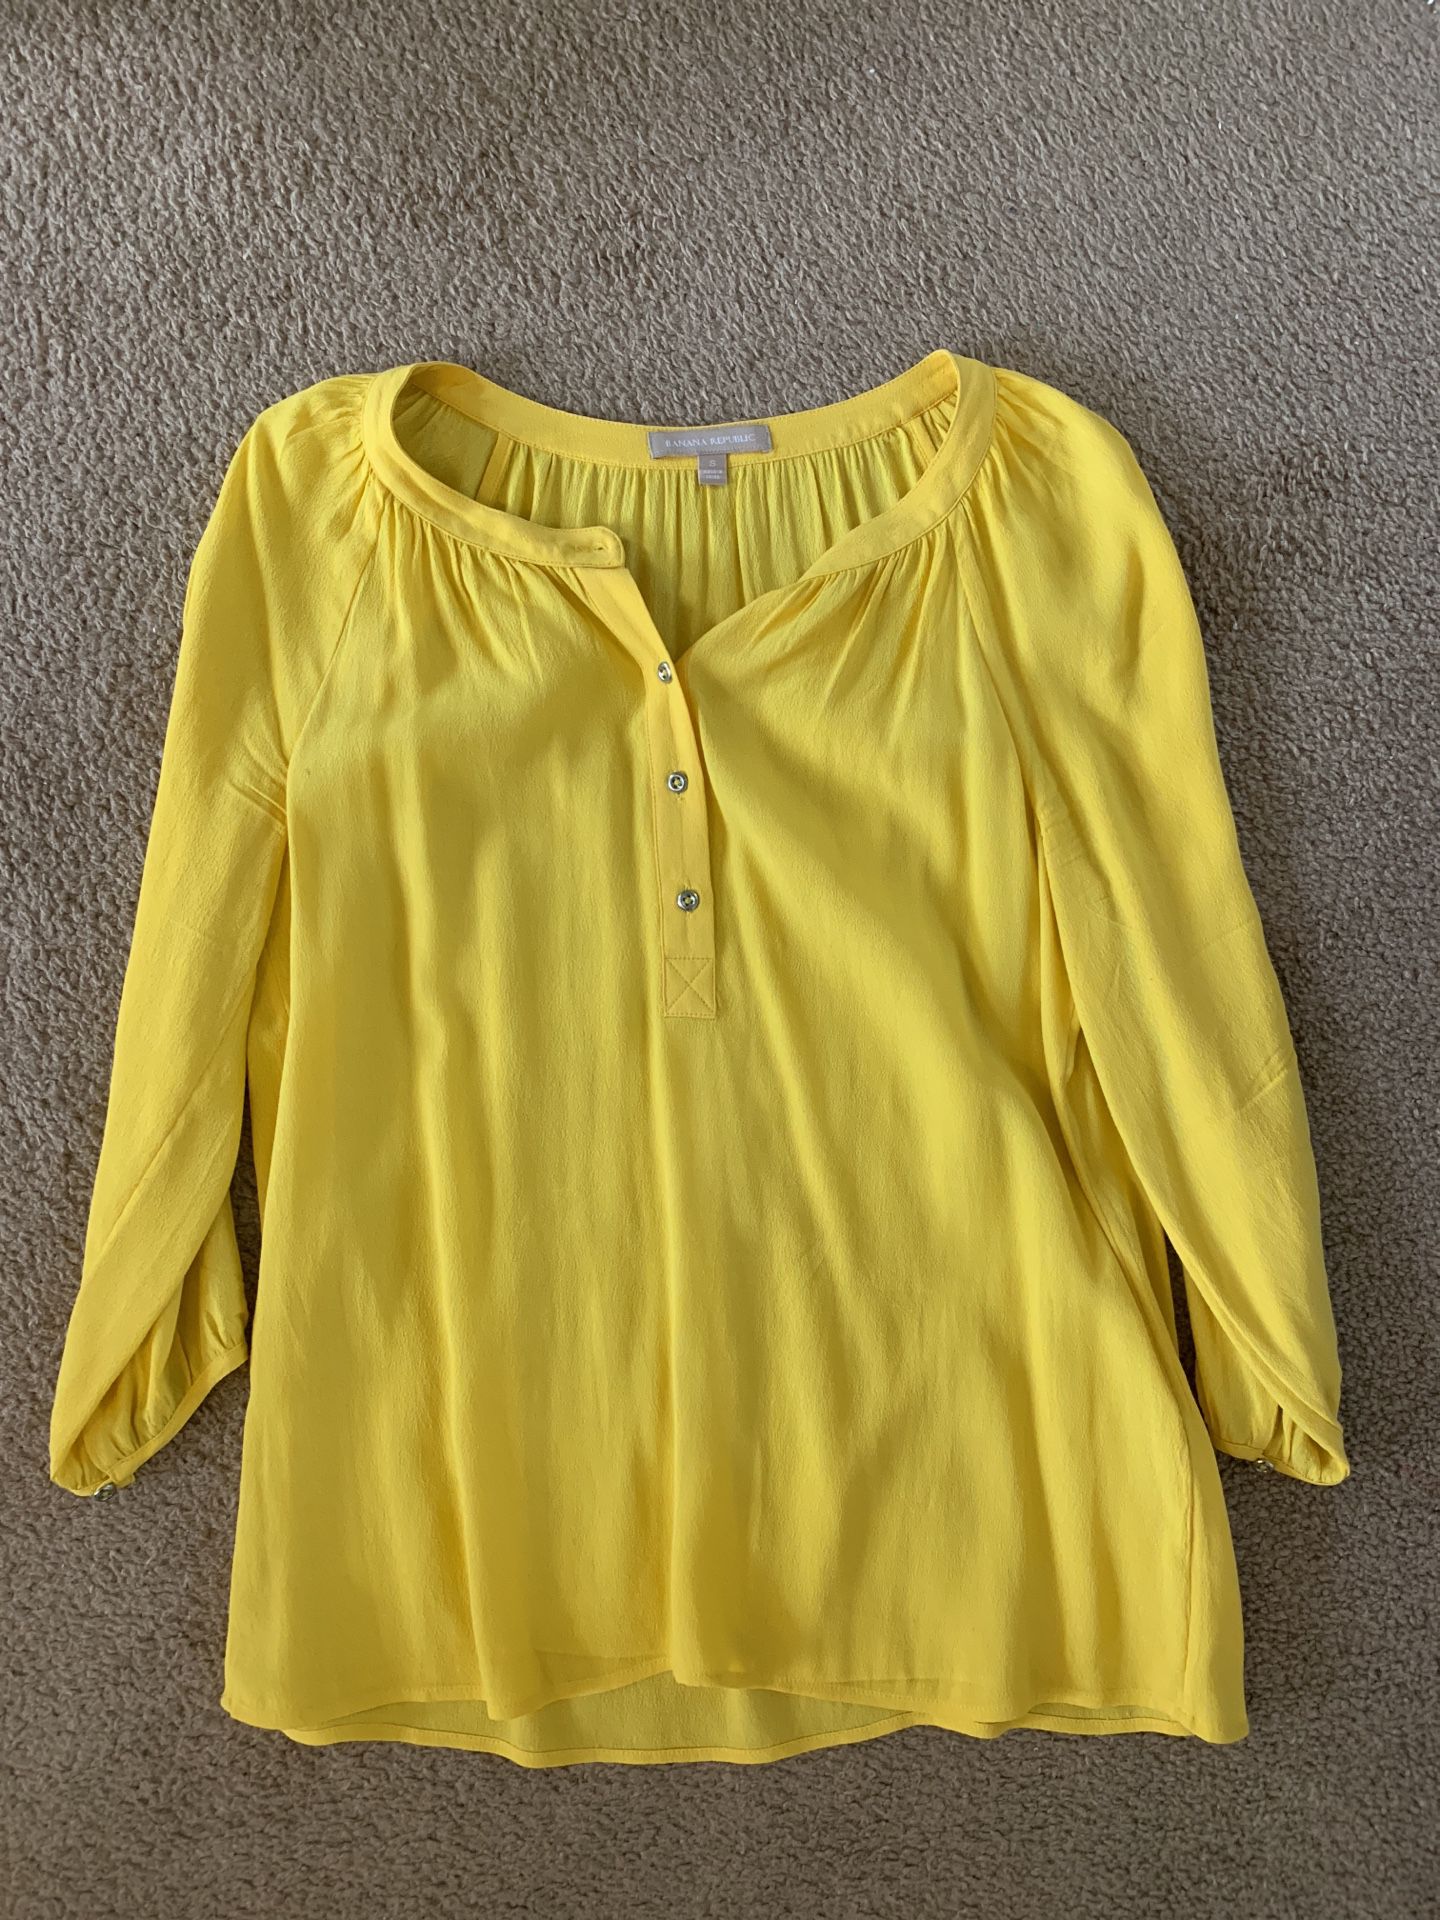 Banana republic blouse yellow size small